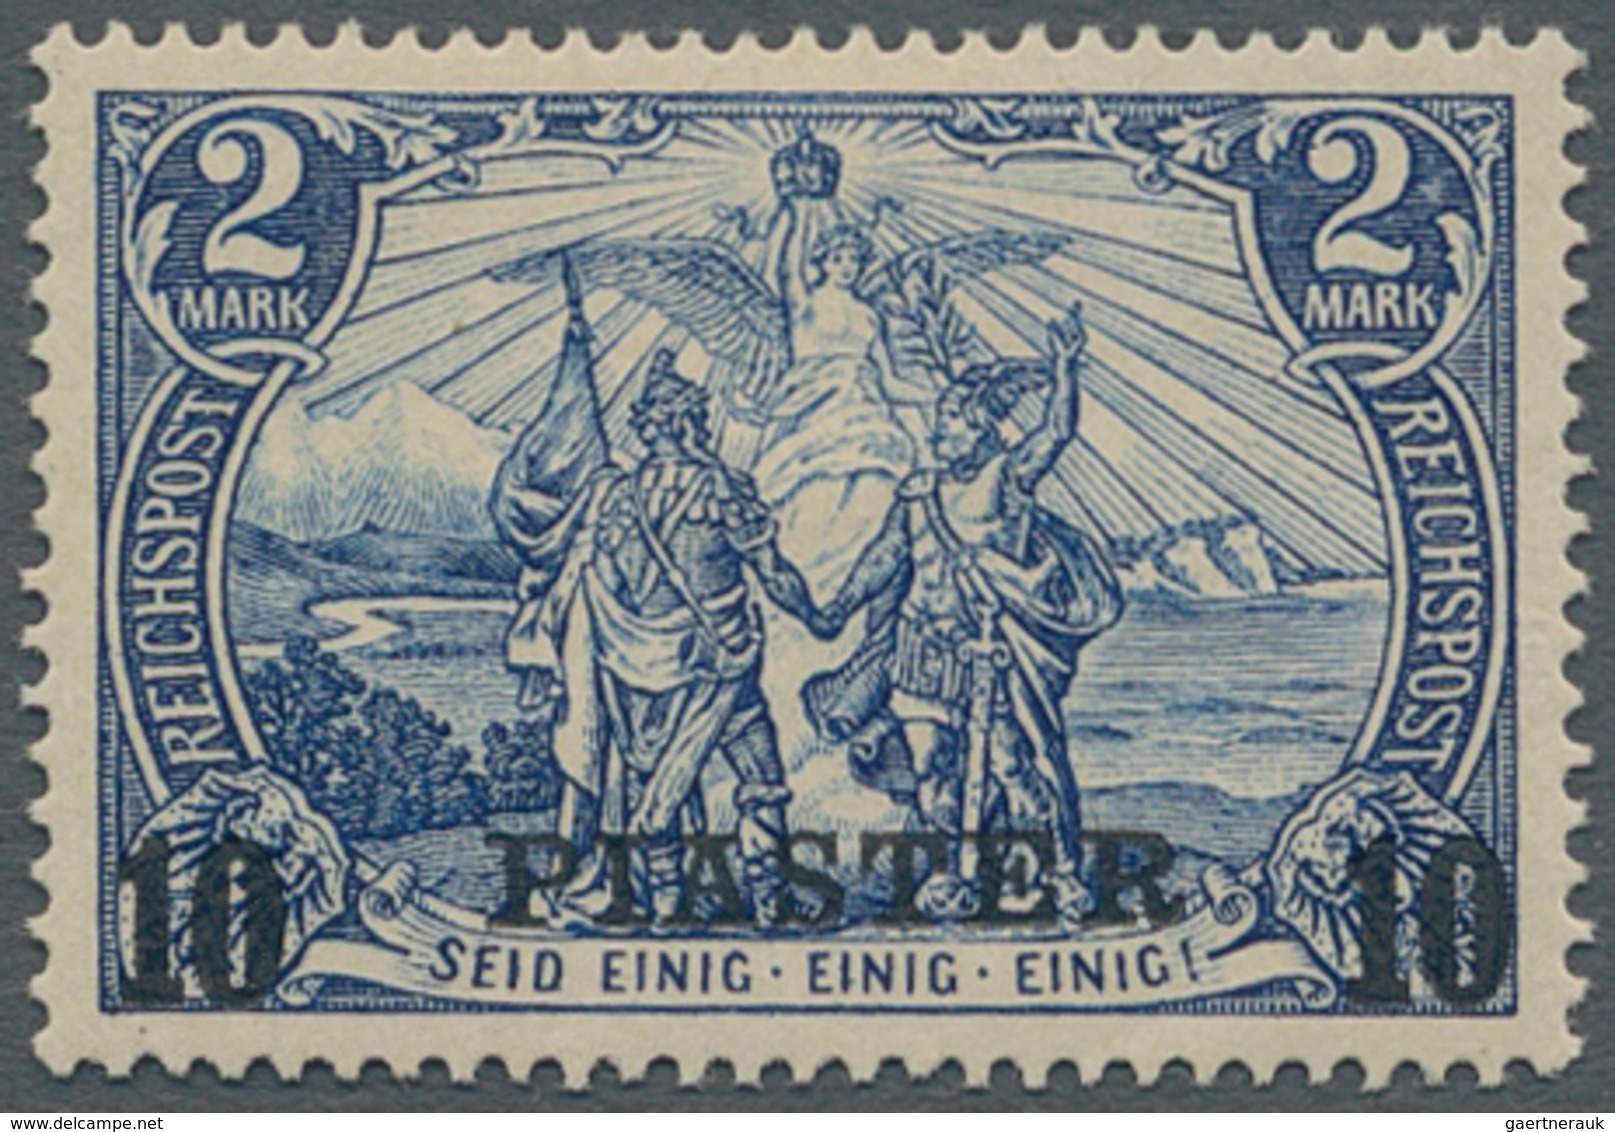 Deutsche Post In Der Türkei: 1900, 10 Pia Auf 2 Mark Type Ii Ungebraucht Mit Falz, Fehlerfrei, Geprü - Deutsche Post In Der Türkei